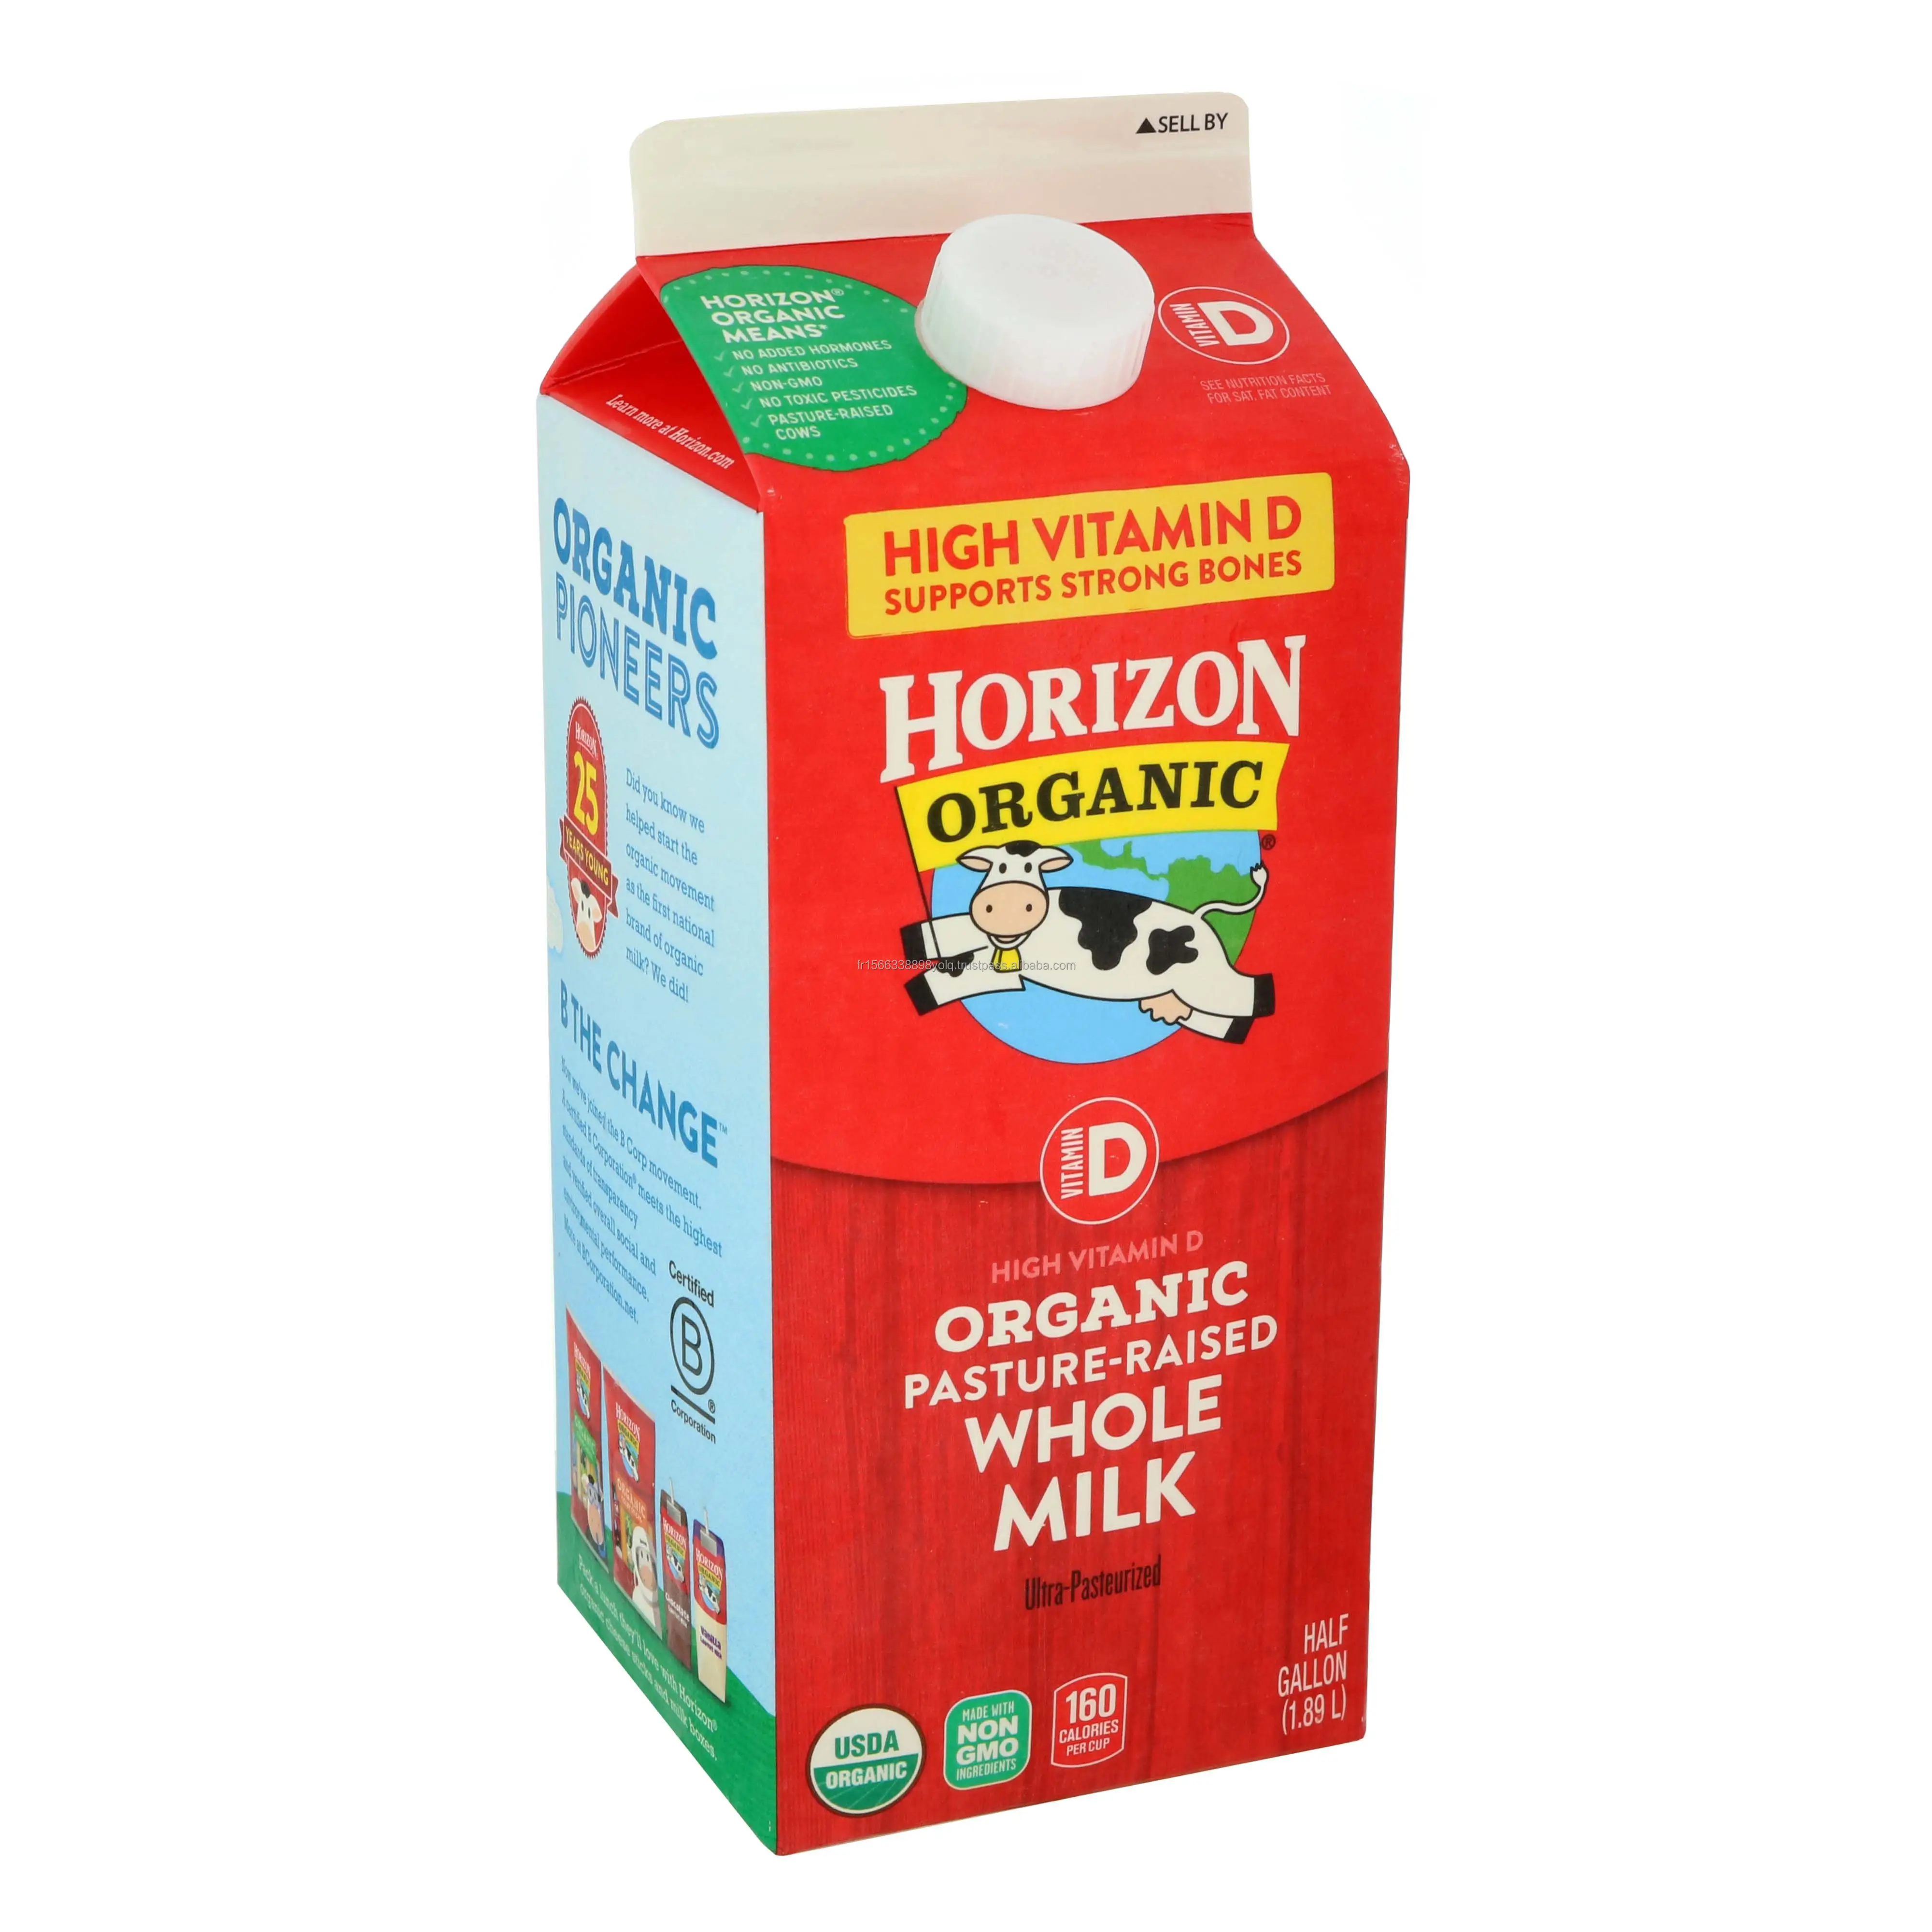 Orizzonte intero organico alto vitamina D latte-1gal